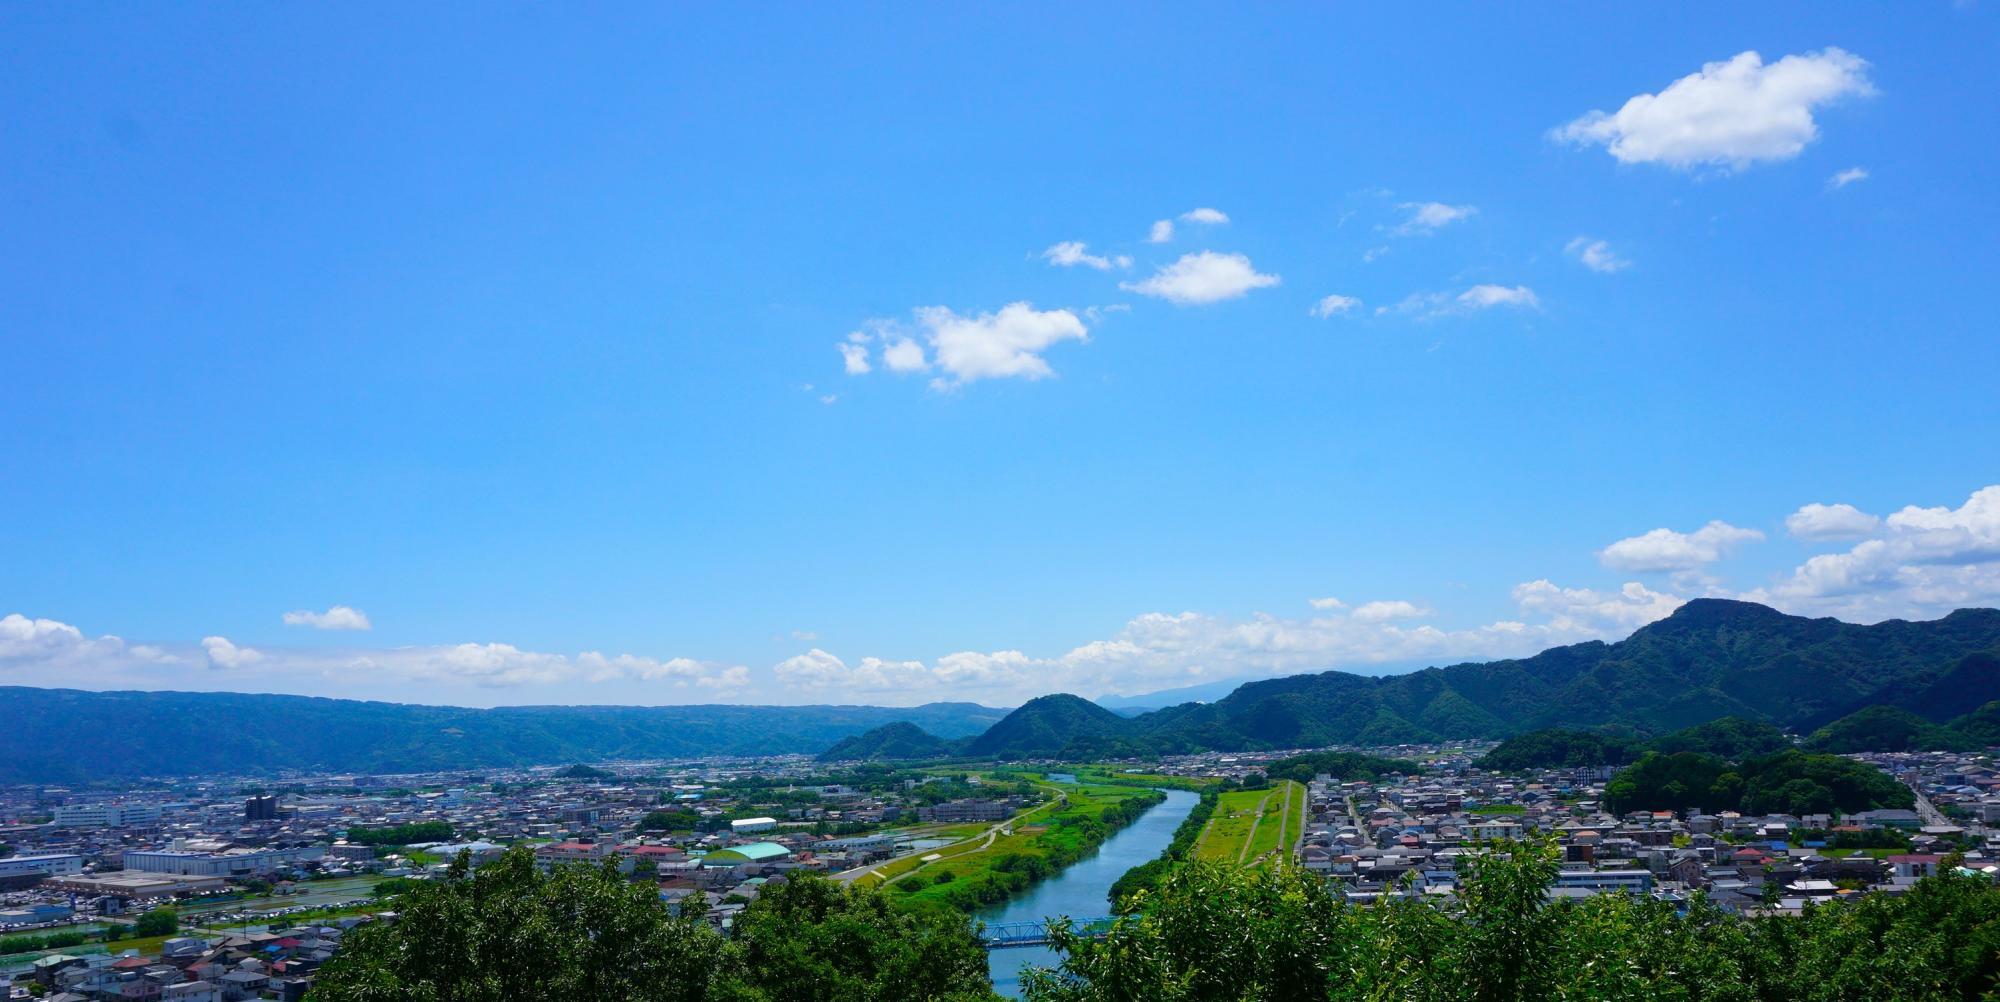 狩野川や伊豆半島の山々が広がる景色